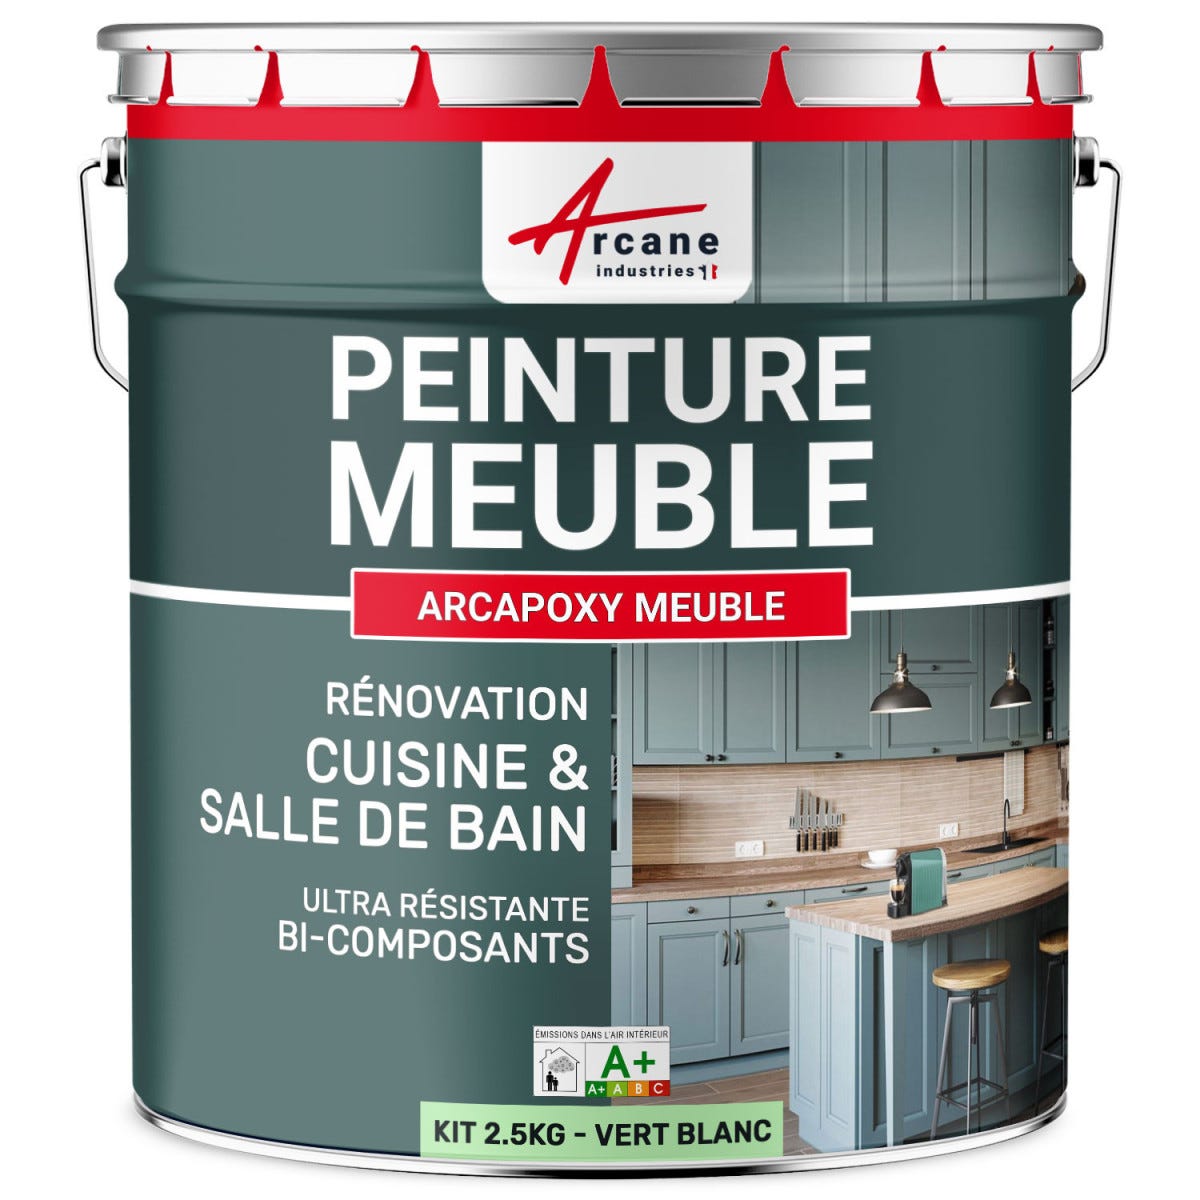 Peinture Meuble Cuisine, Salle de Bain - Résine ARCAPOXY MEUBLE - 2.5 kg (jusqu'à 30 m² en 2 couches) - Vert Blanc - RAL 6019 - ARCANE INDUSTRIES 0